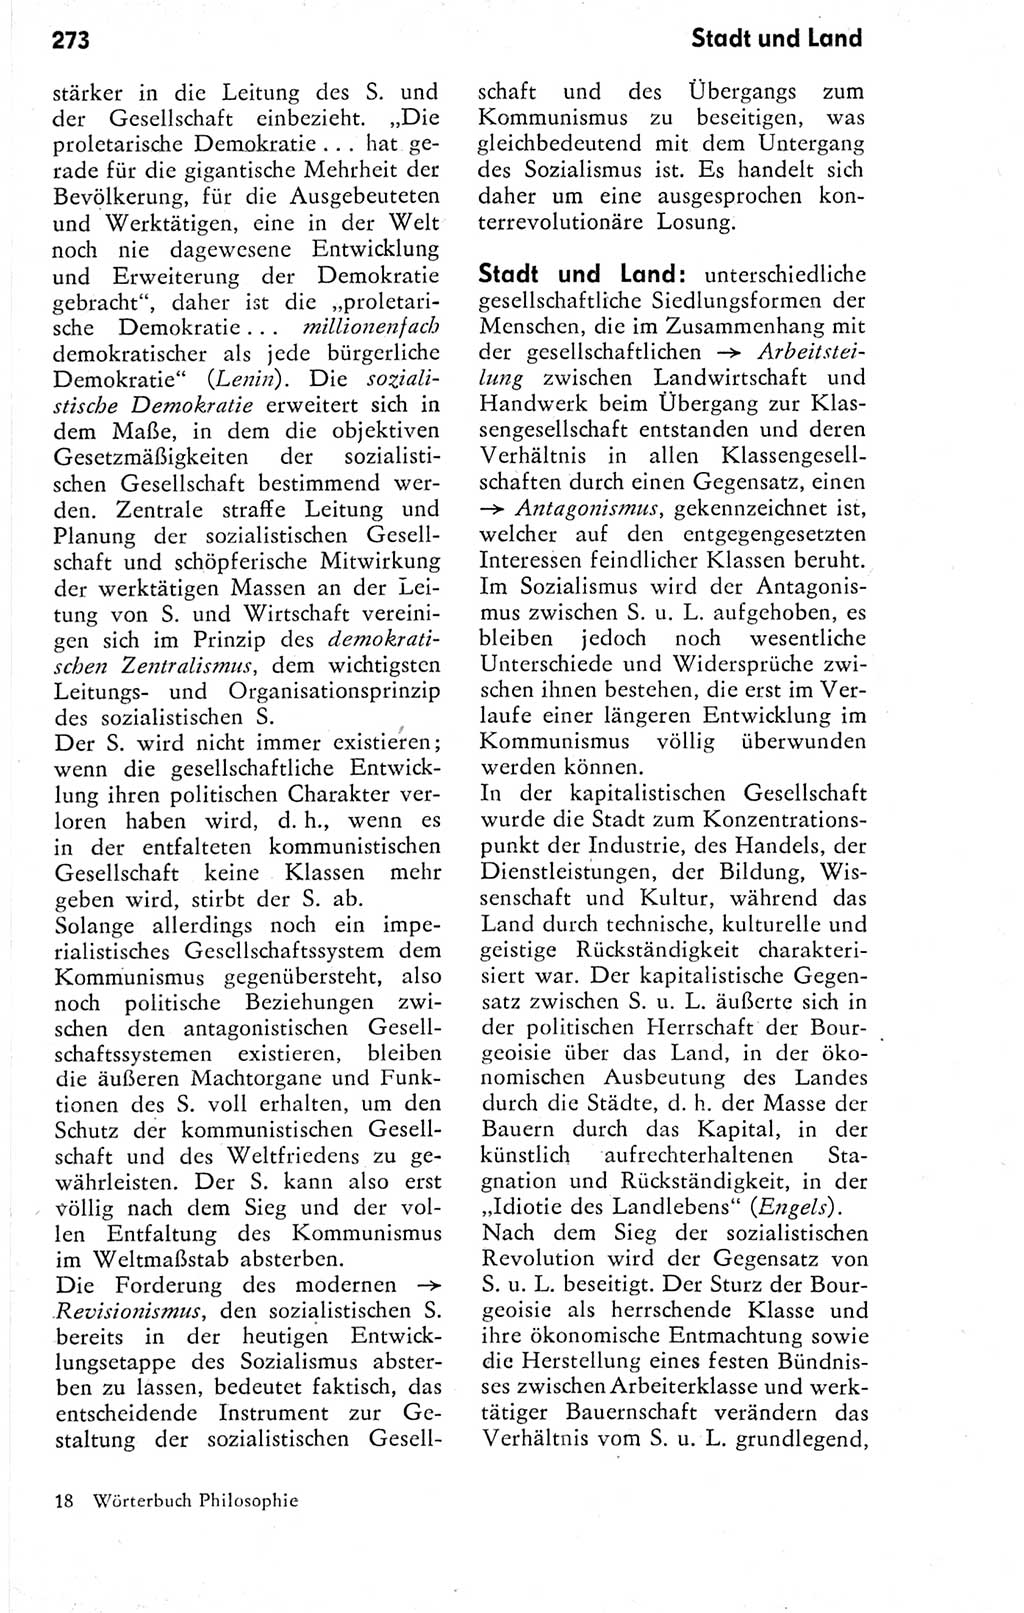 Kleines Wörterbuch der marxistisch-leninistischen Philosophie [Deutsche Demokratische Republik (DDR)] 1974, Seite 273 (Kl. Wb. ML Phil. DDR 1974, S. 273)